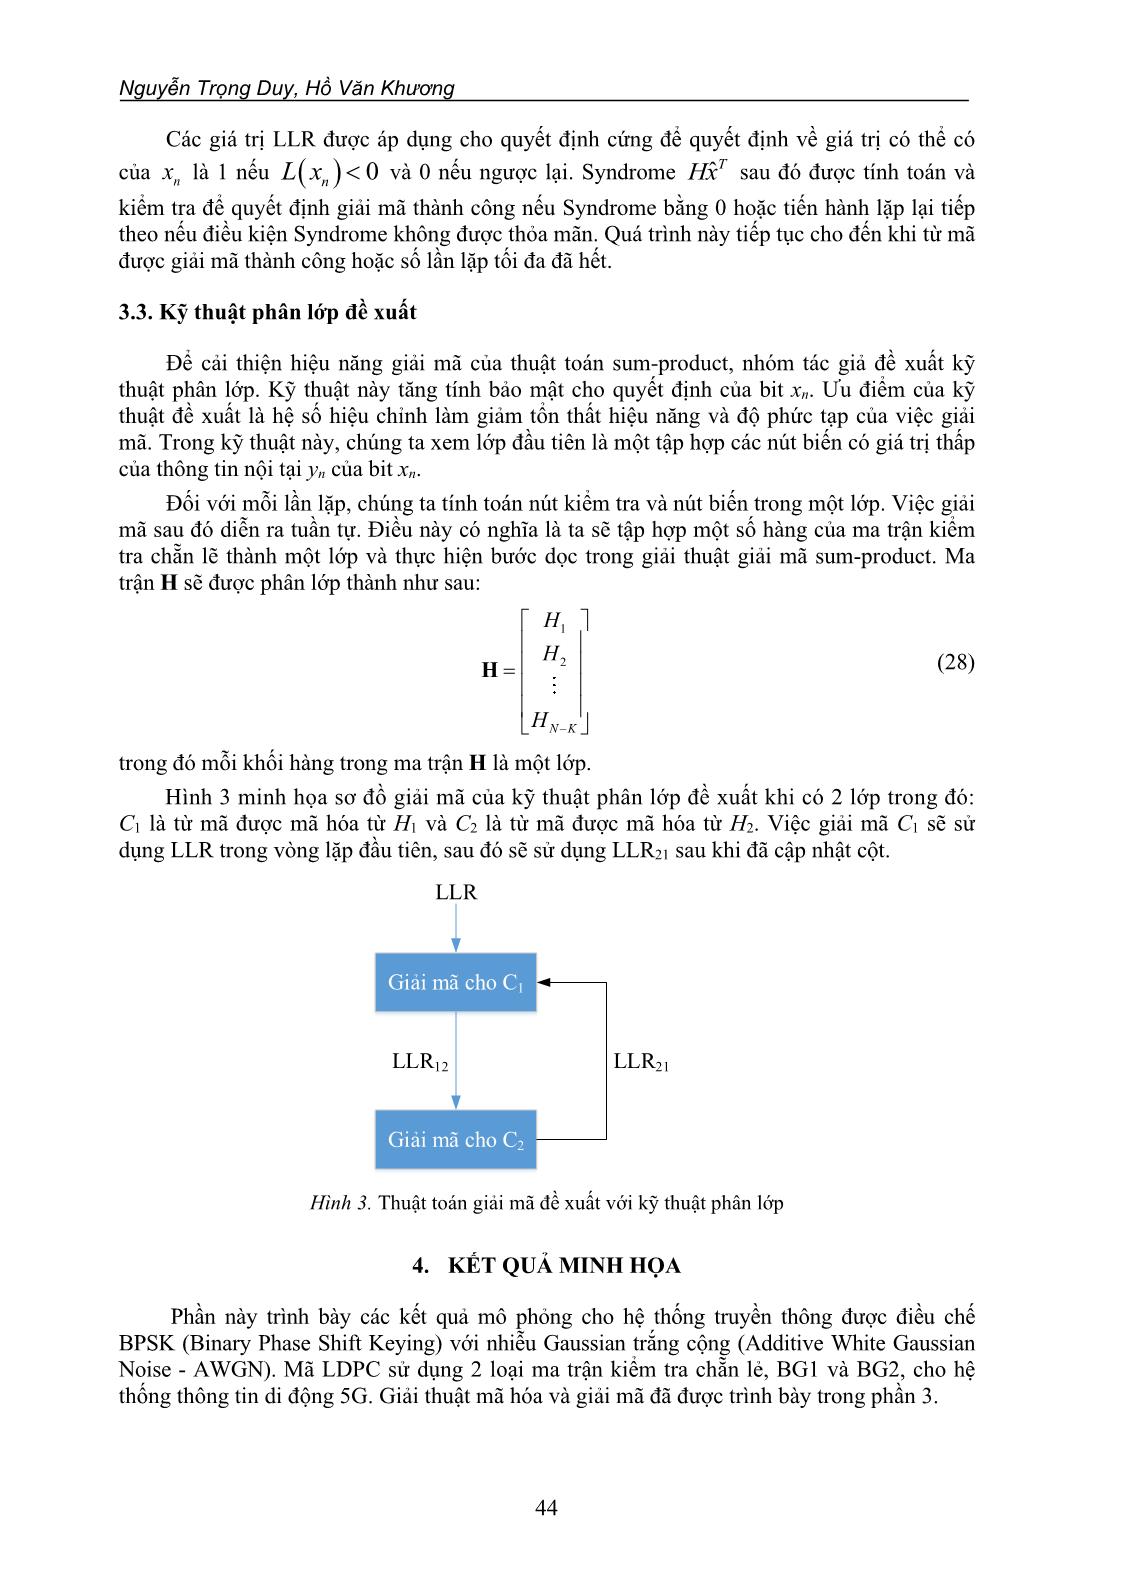 Kỹ thuật phân lớp để giải mã hiệu quả mã LDPC trong hệ thống thông tin di động 5G trang 9